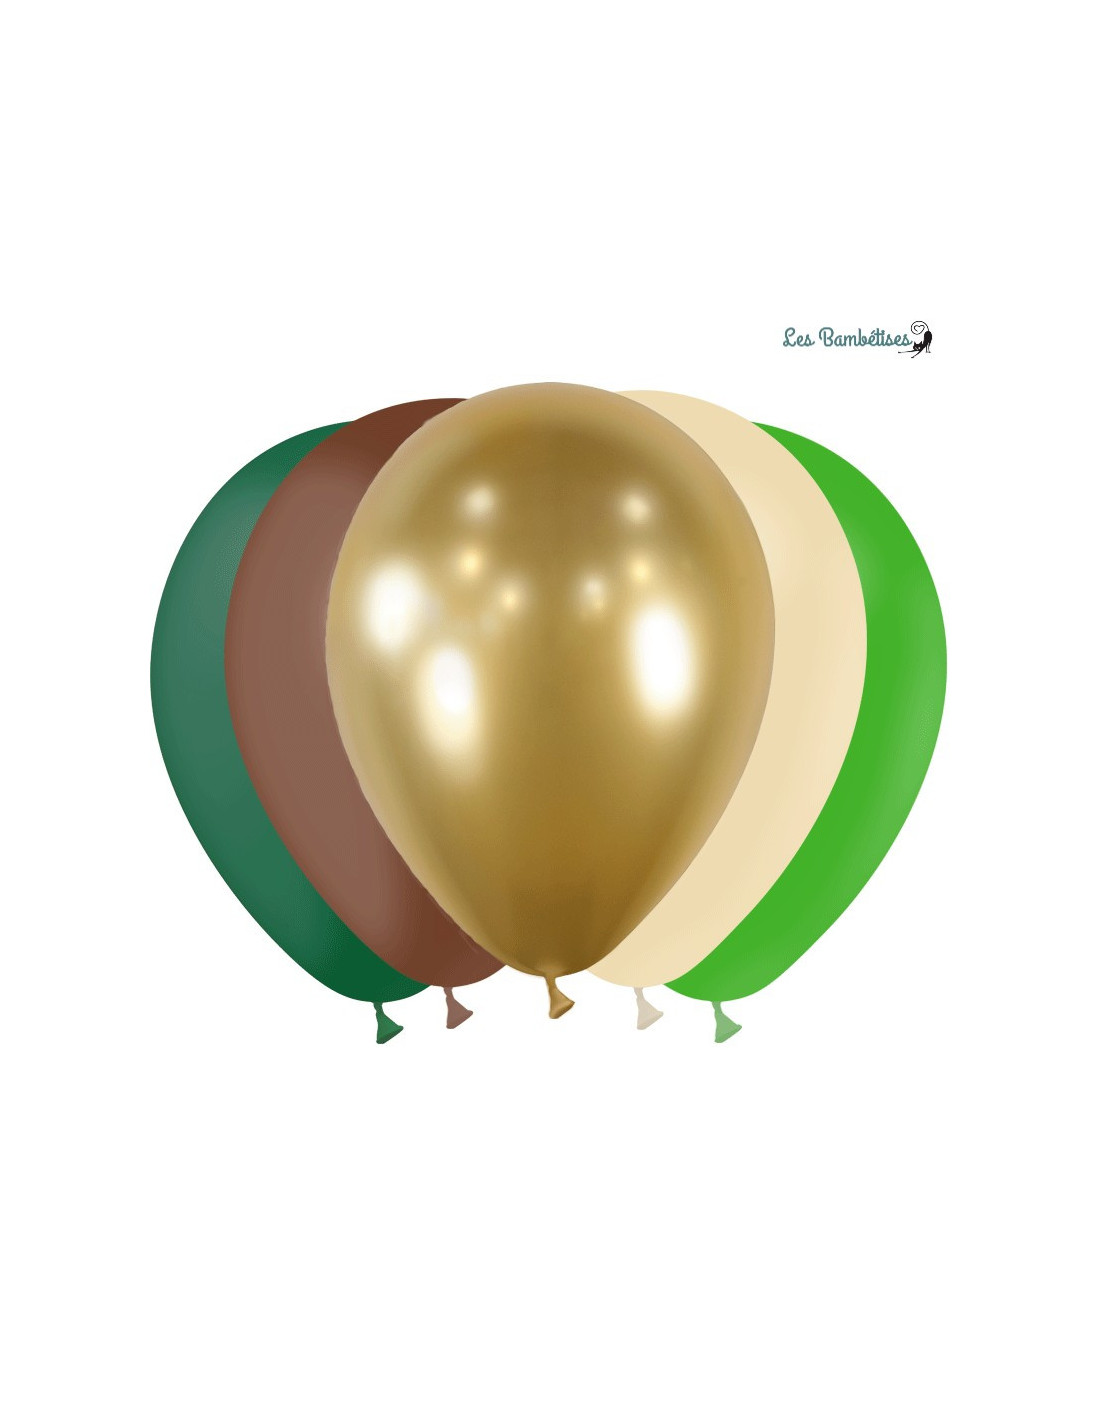 Arche de ballons jungle vert marron thème anniversaire animaux